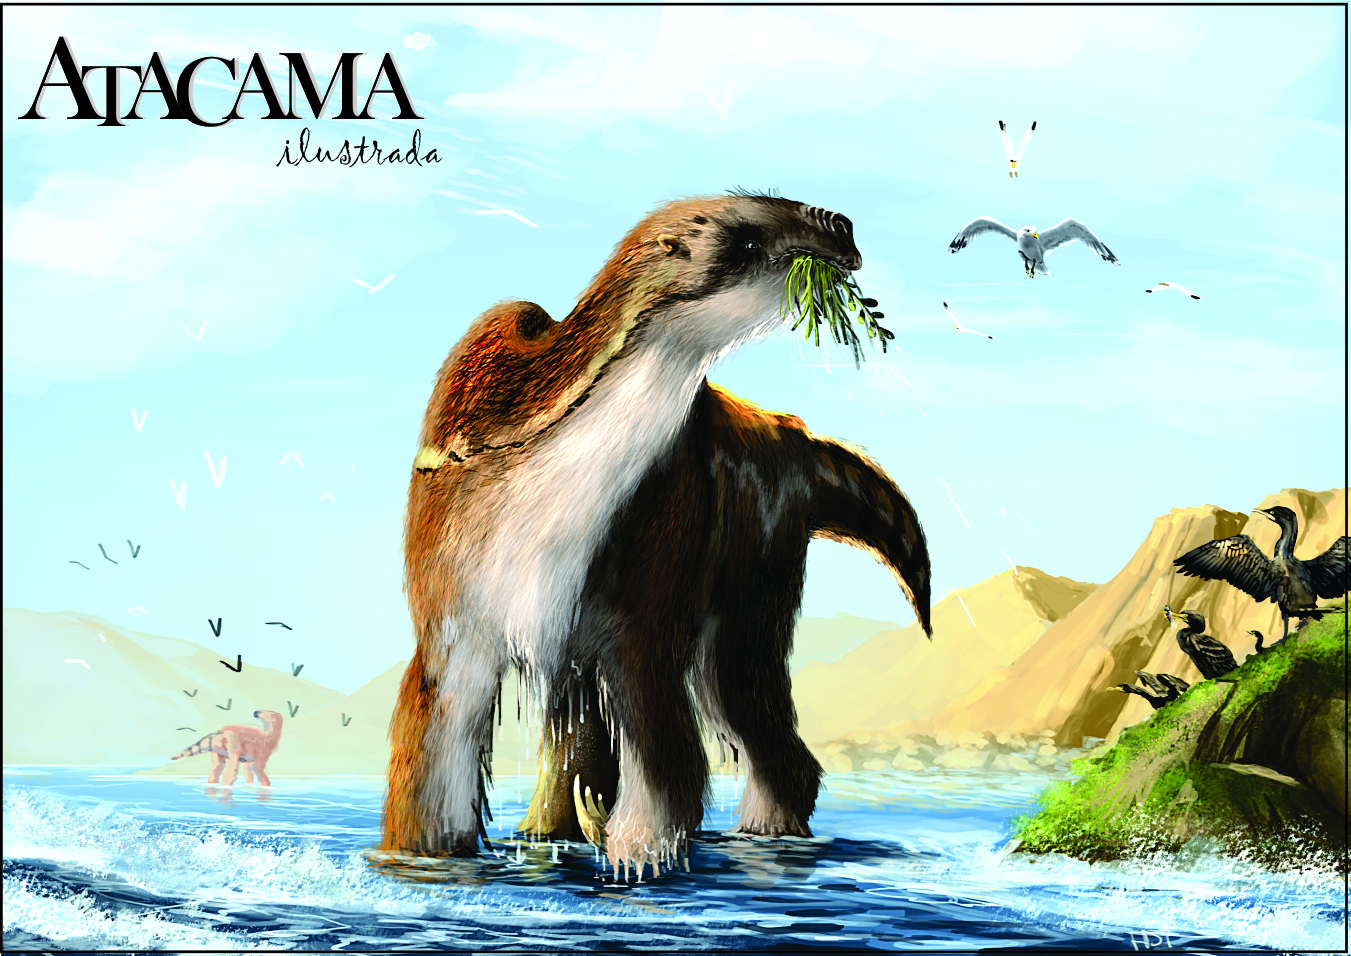 Atacama ilustrada, el primer Álbum que recopila los animales prehistóricos de Atacama